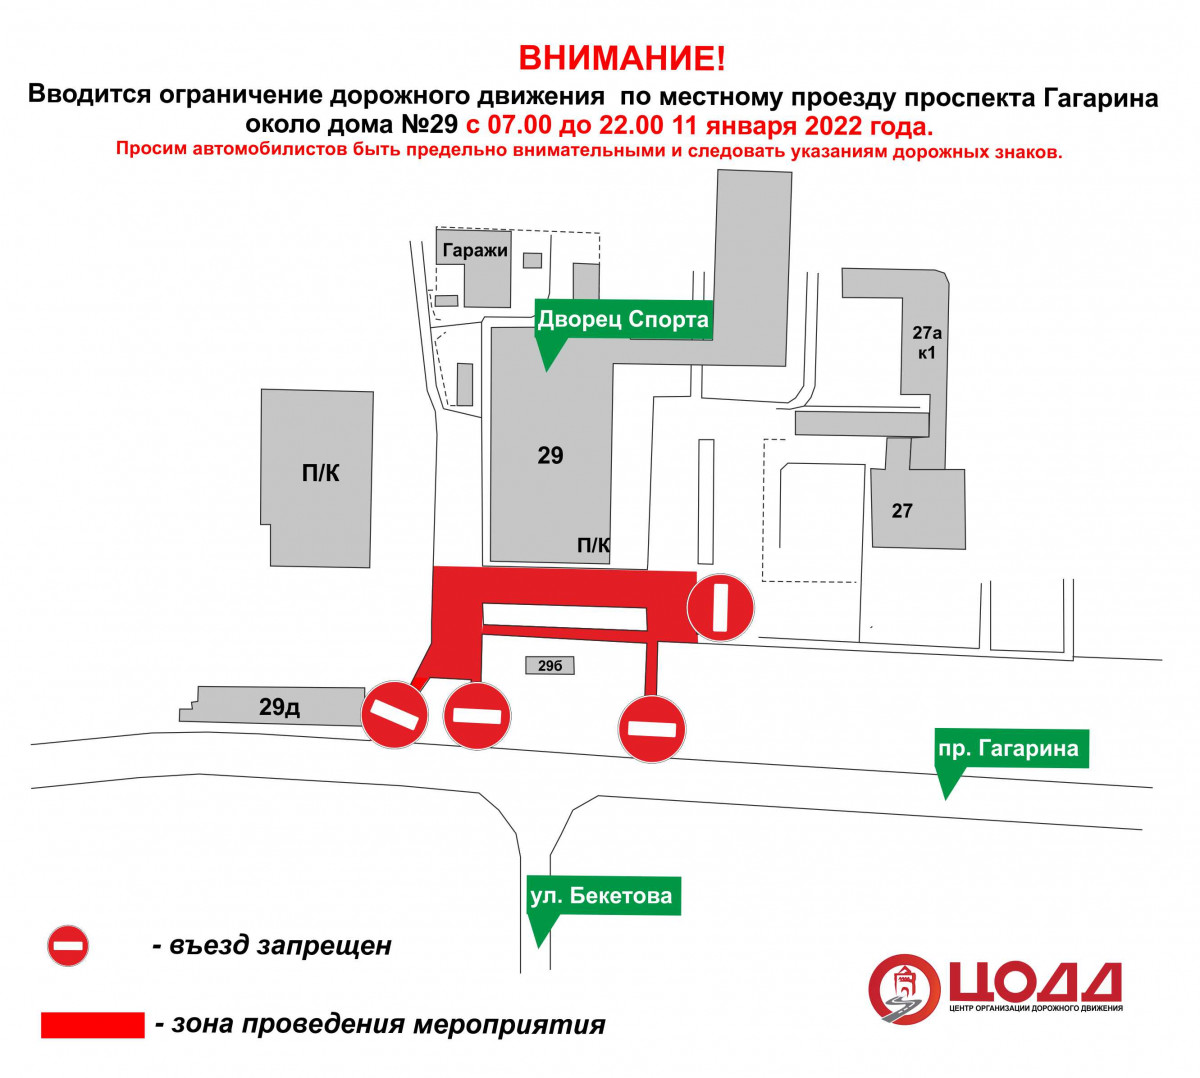 Движение транспорта приостановят по местному проезду проспекта Гагарина 11 января